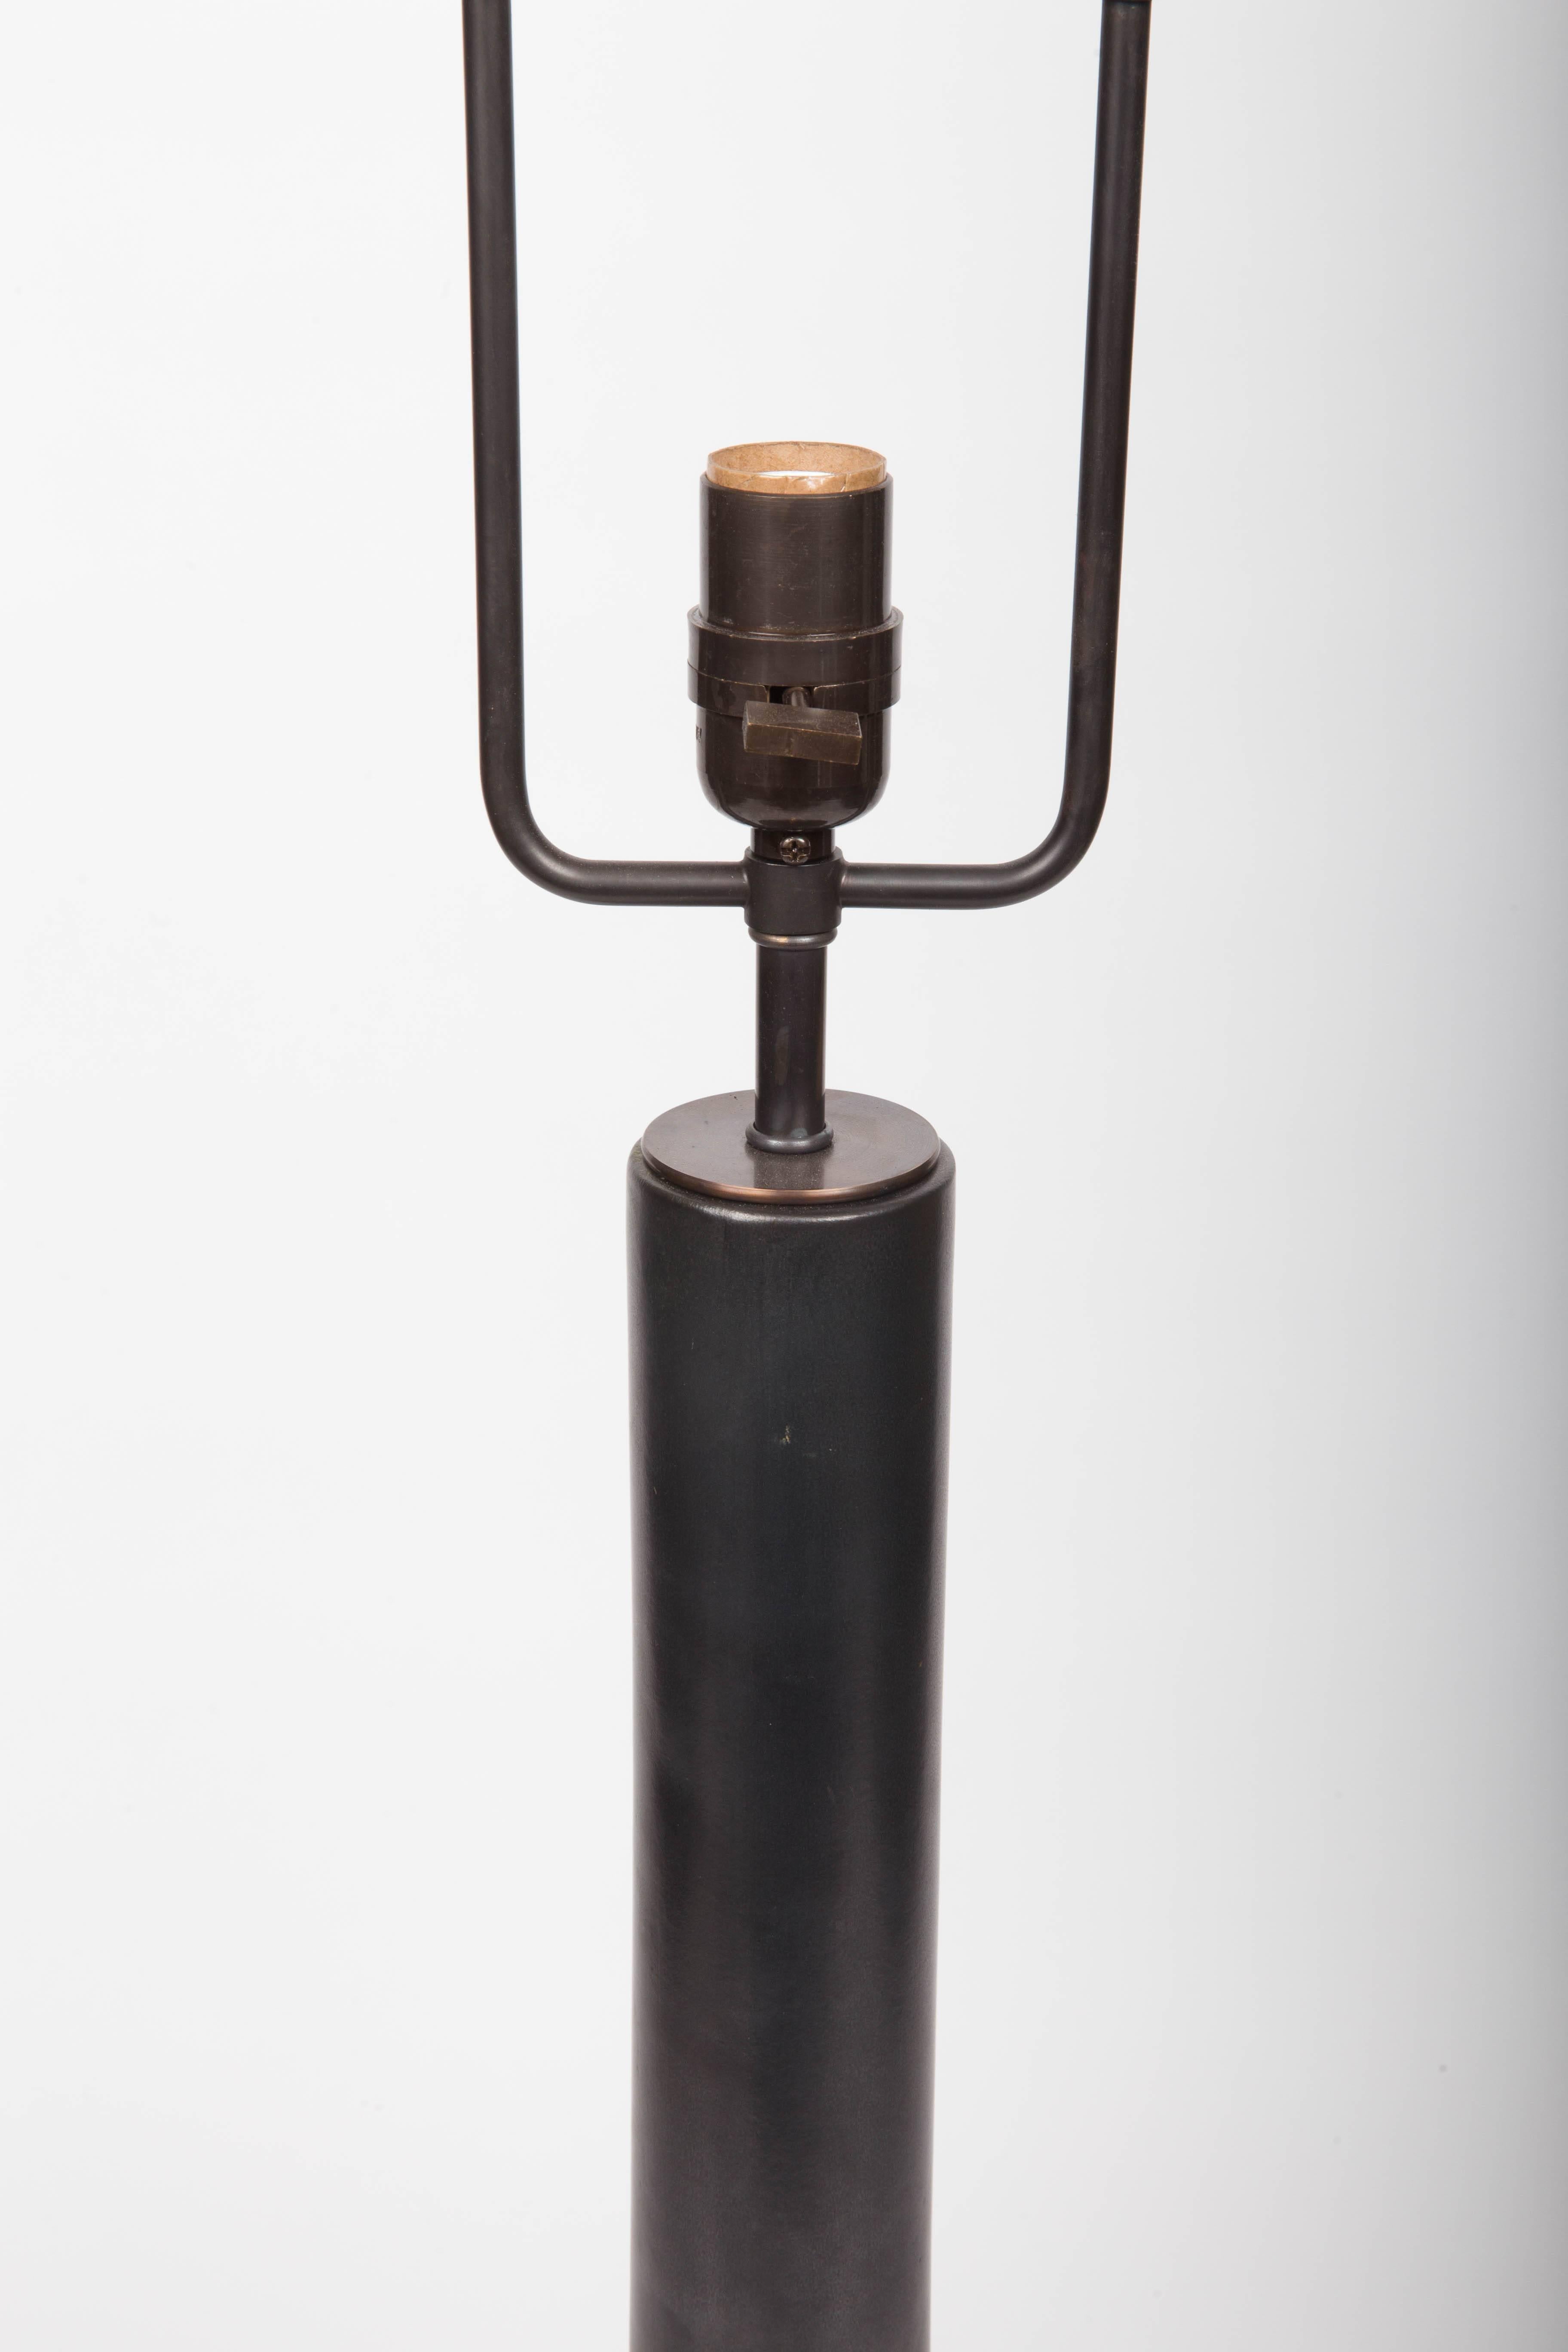 Mid-20th Century Black Ceramic Table Lamp Attributed to Gordon & Jane Martz, c. 1960s